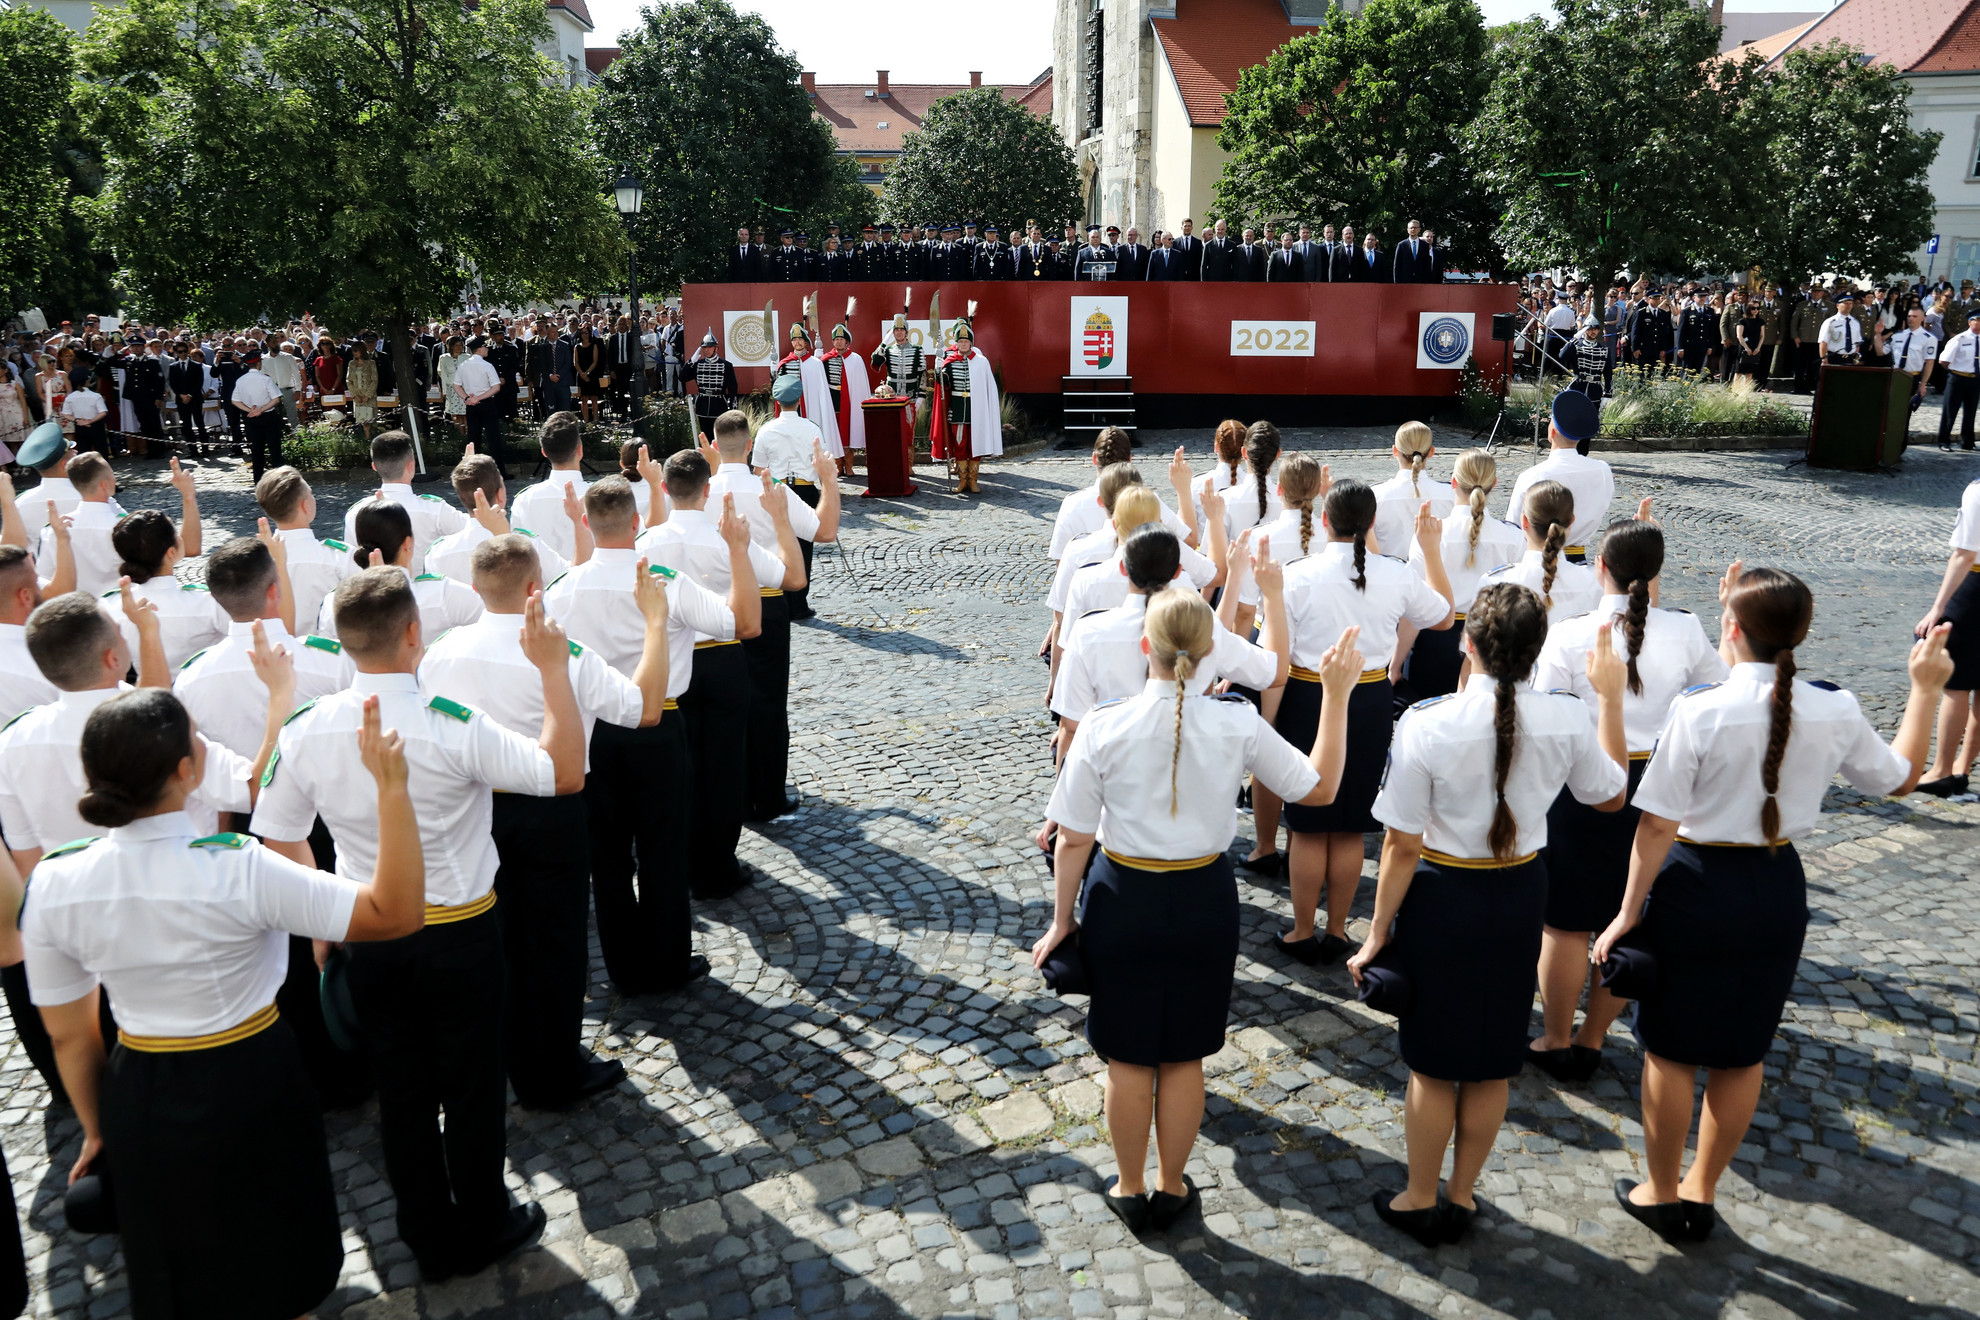 A kormányfő arra kérte a tiszteket, maradjanak hűek az esküjükhöz, és szolgálják erényesen Magyarországot